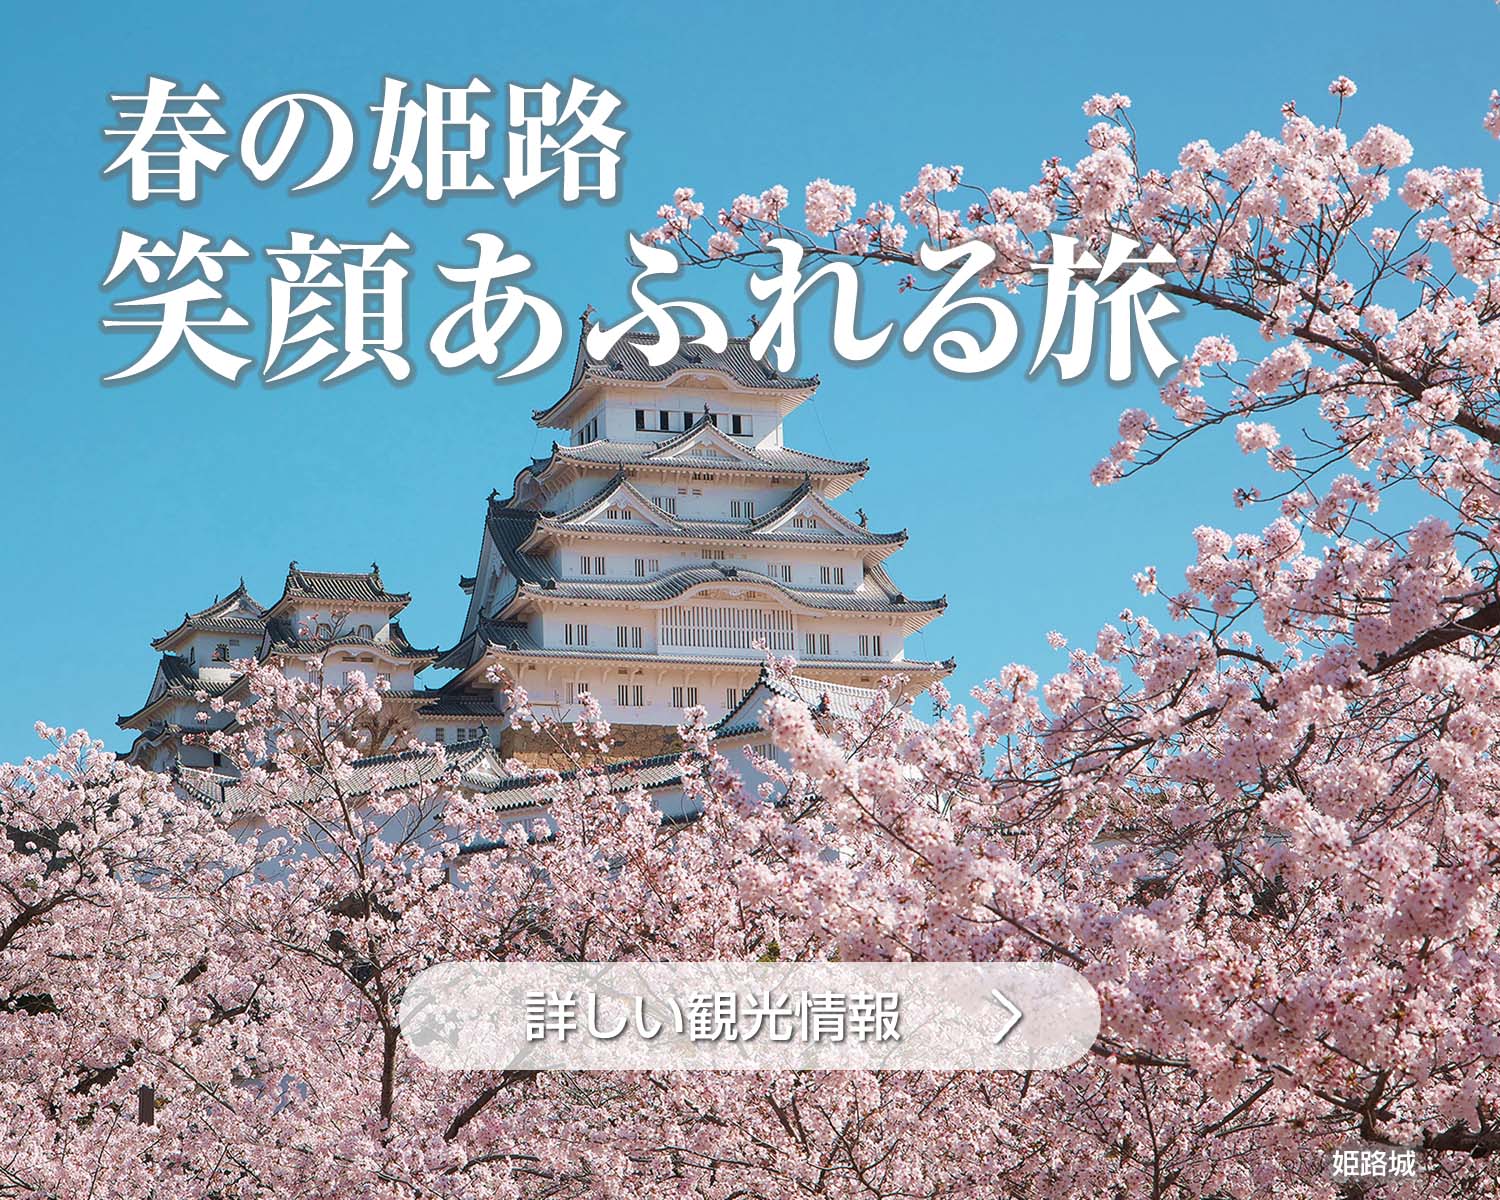 春の姫路、笑顔溢れる旅